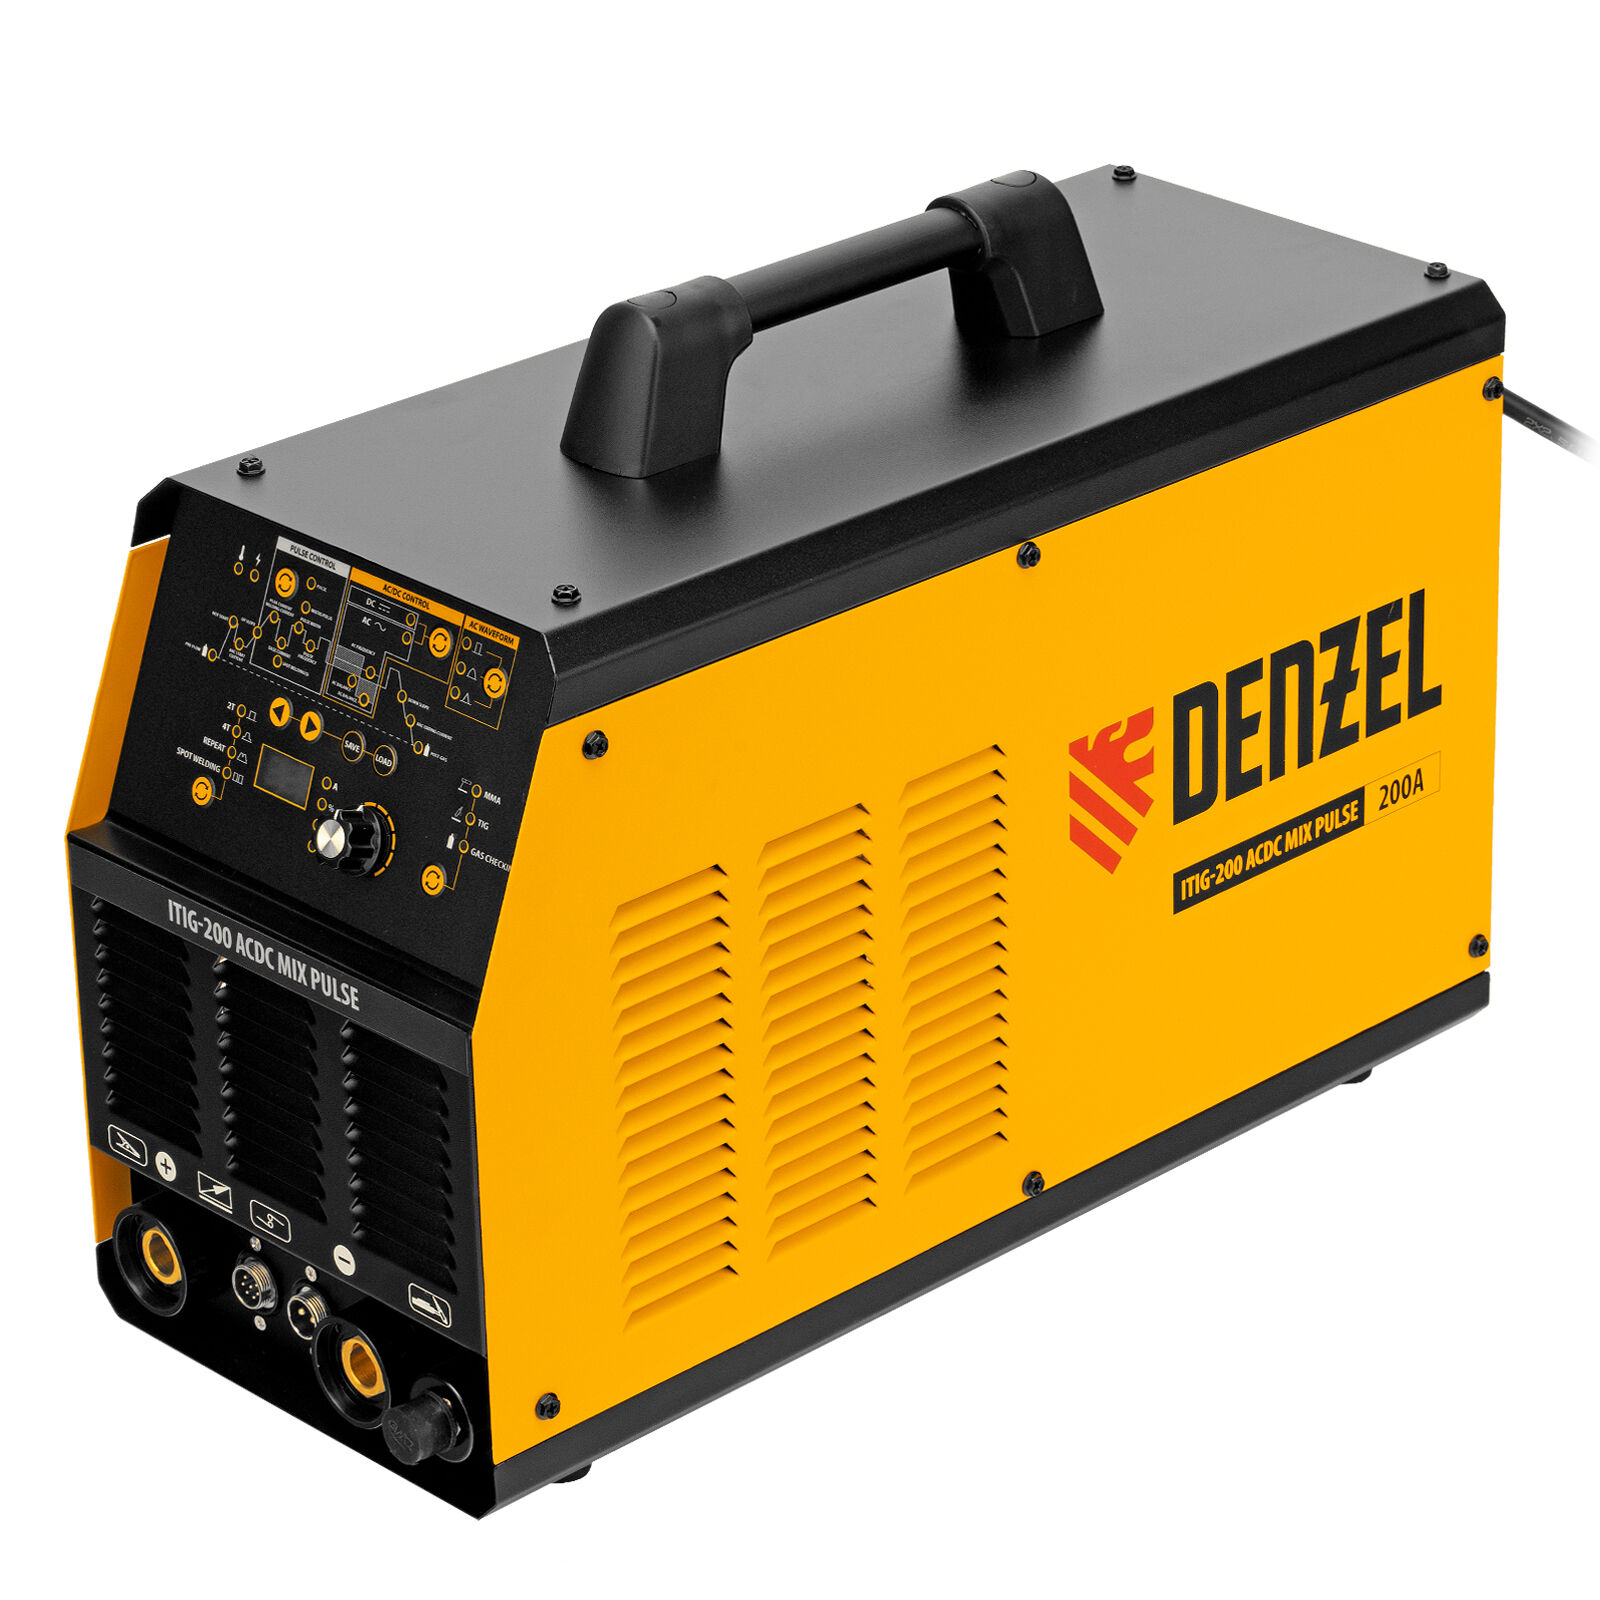 Инверторный аппарат аргонодуговой сварки Denzel ITIG-200 AC/DC Mix Pulse 6